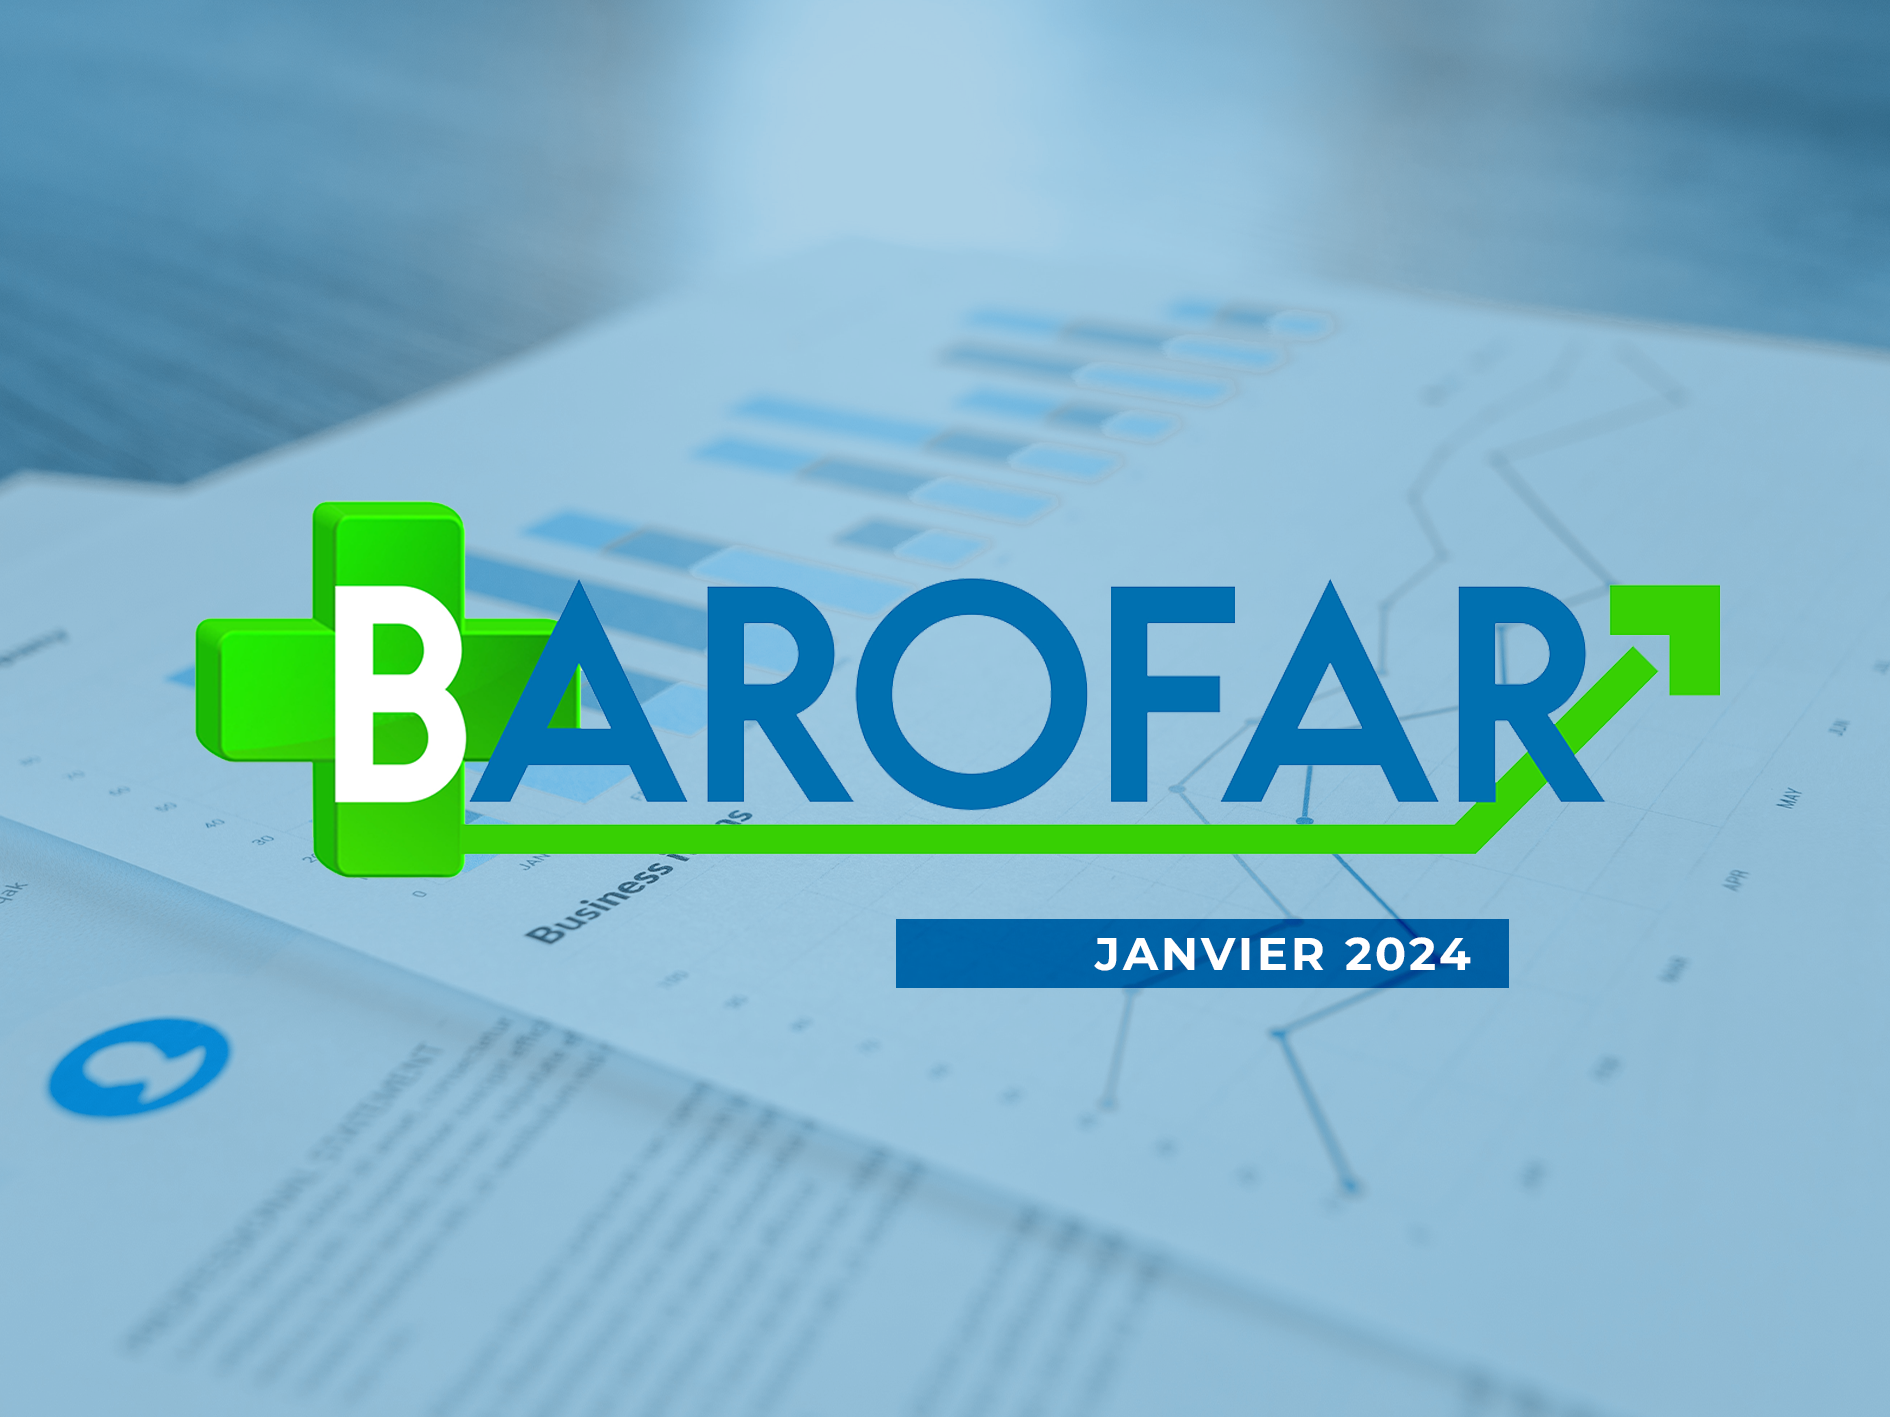 Barofar janvier 2024